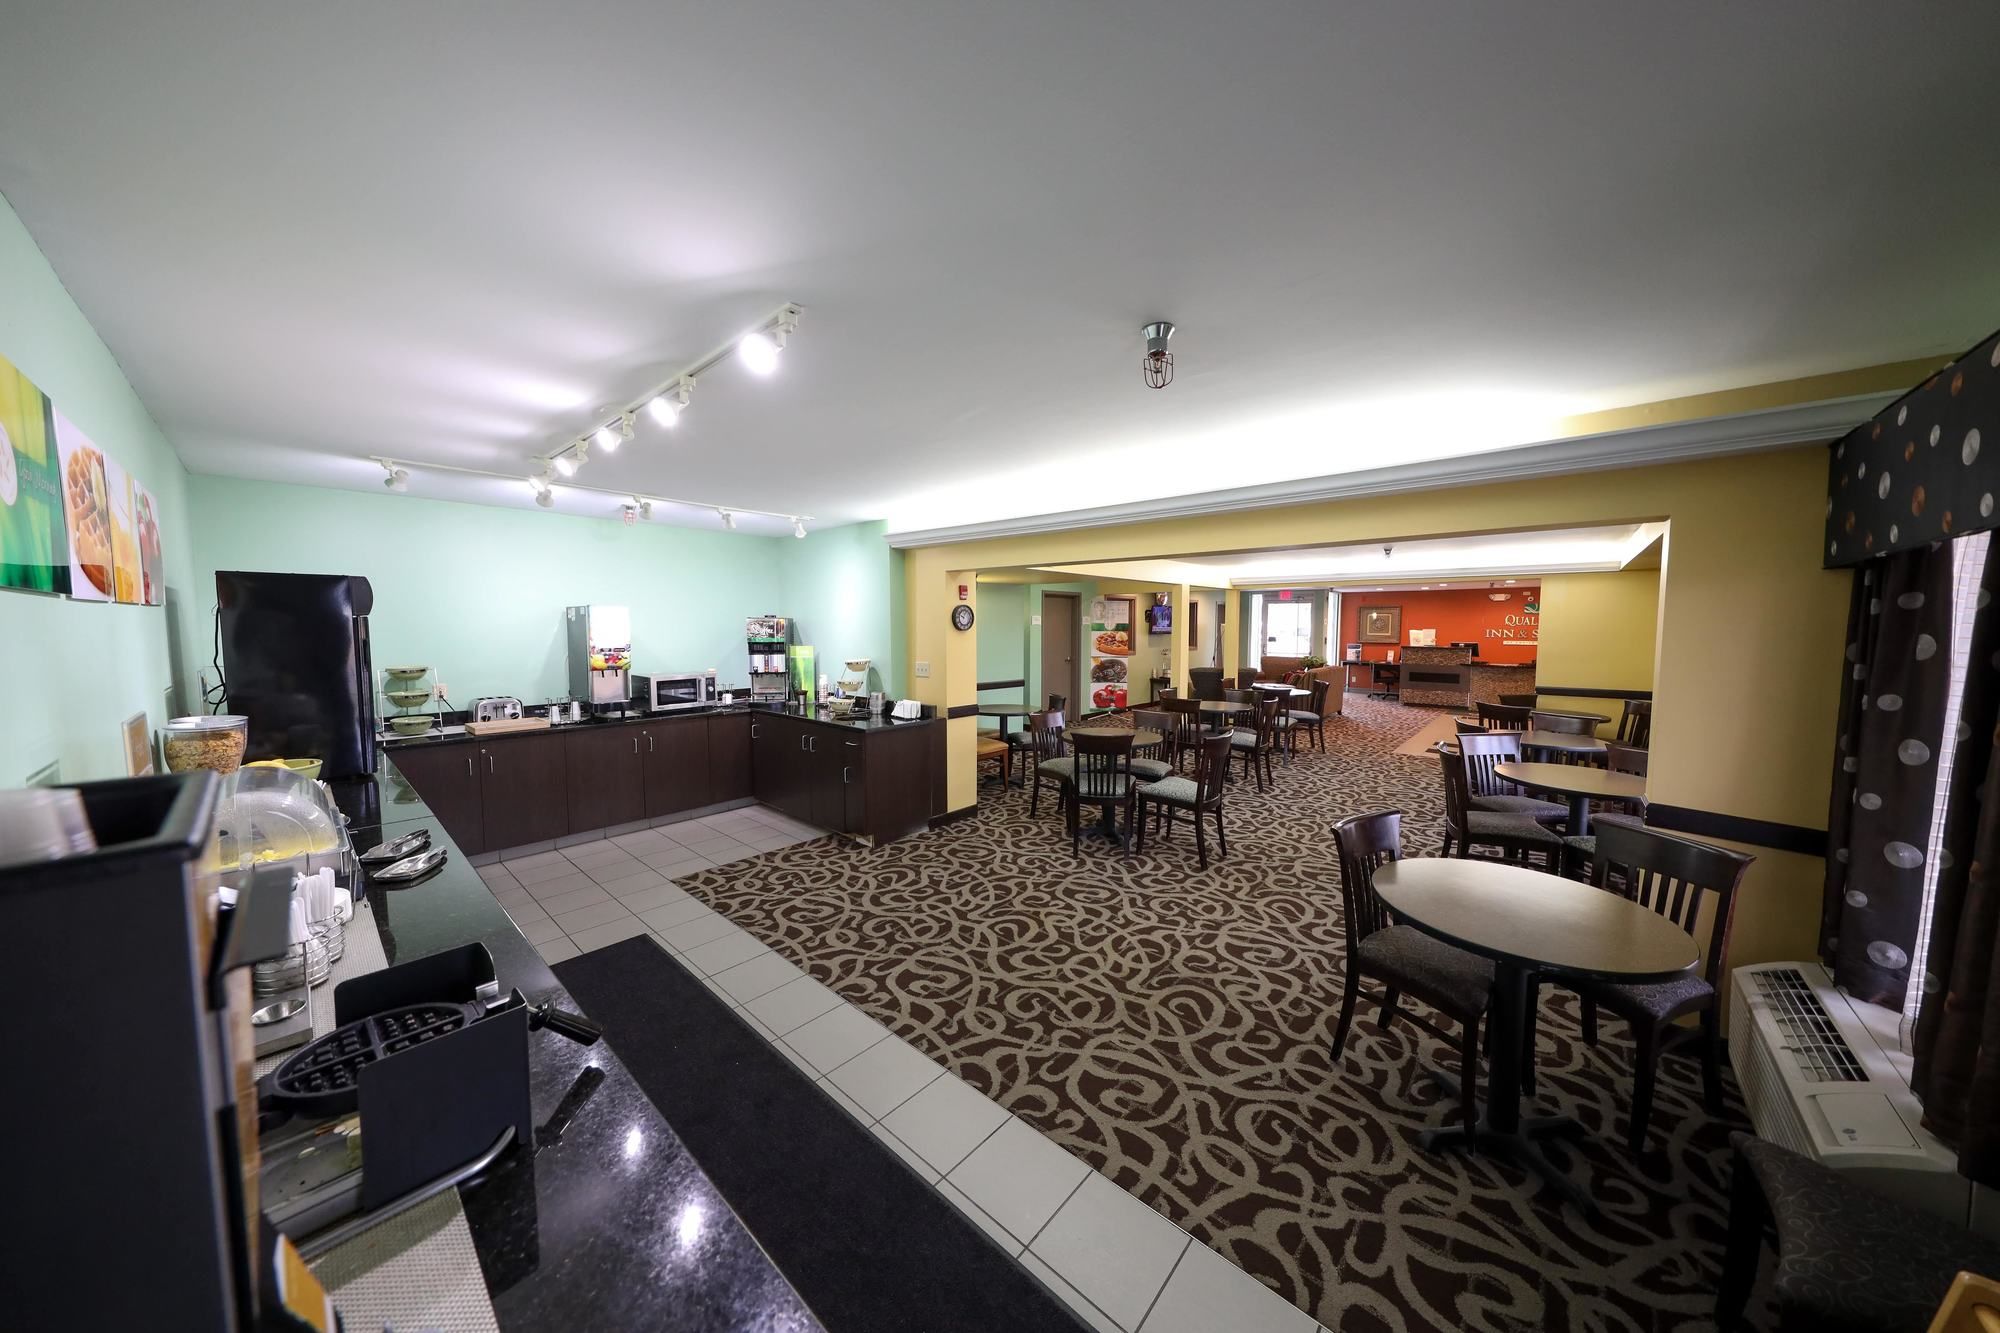 Copley Inn & Suites, Copley - Akron